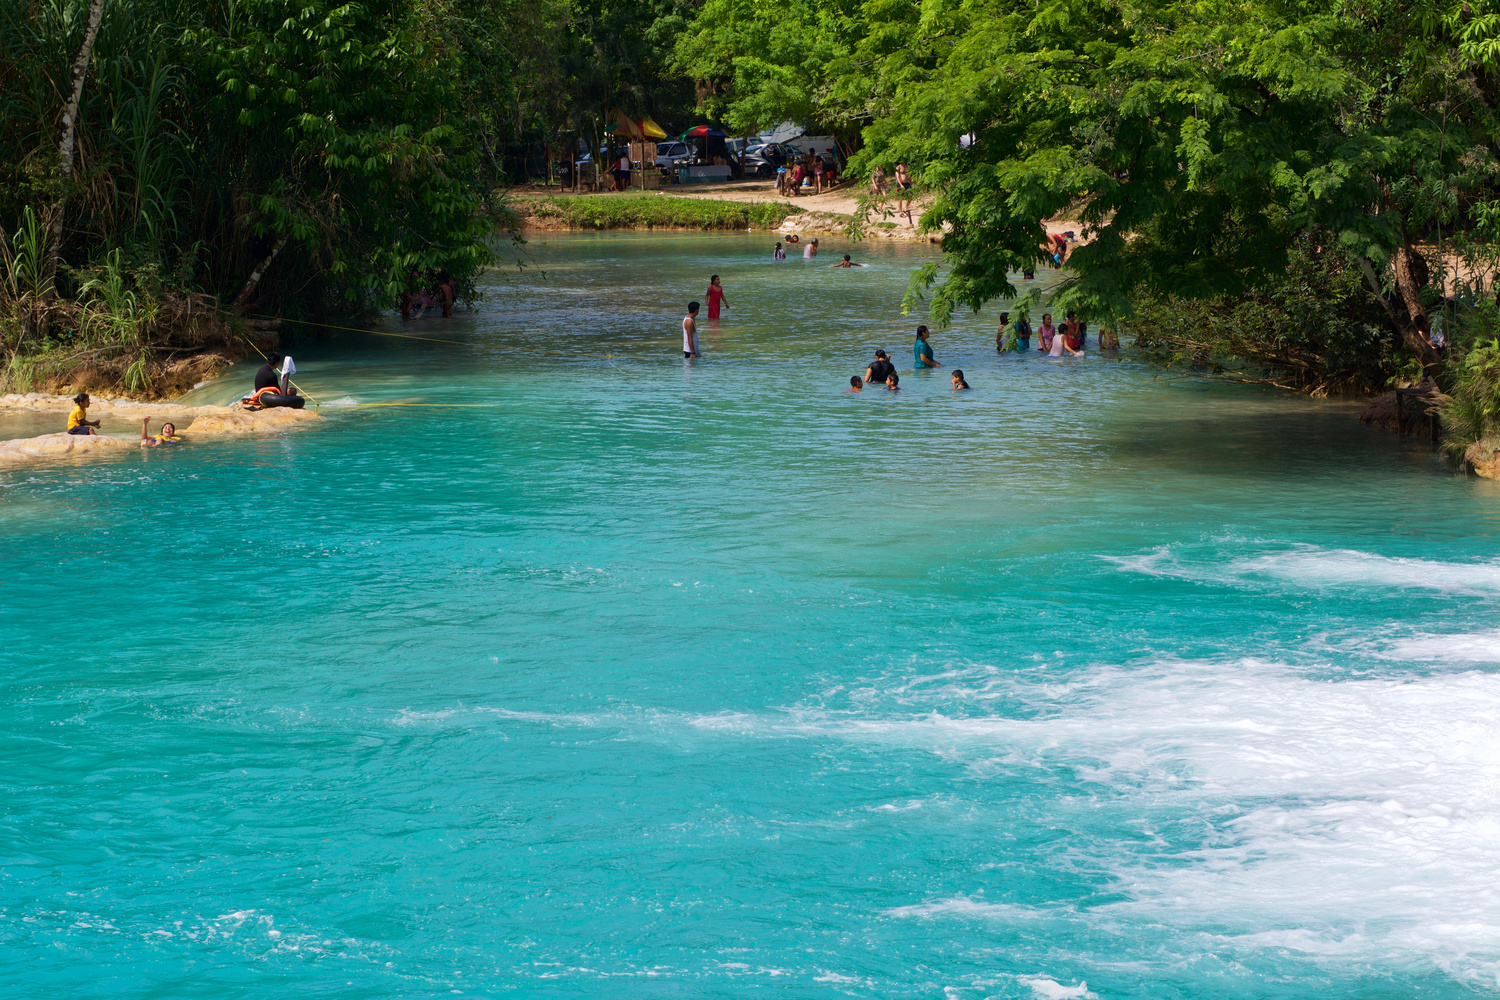 Visiter les cascades d'Agua Azul à Palenque